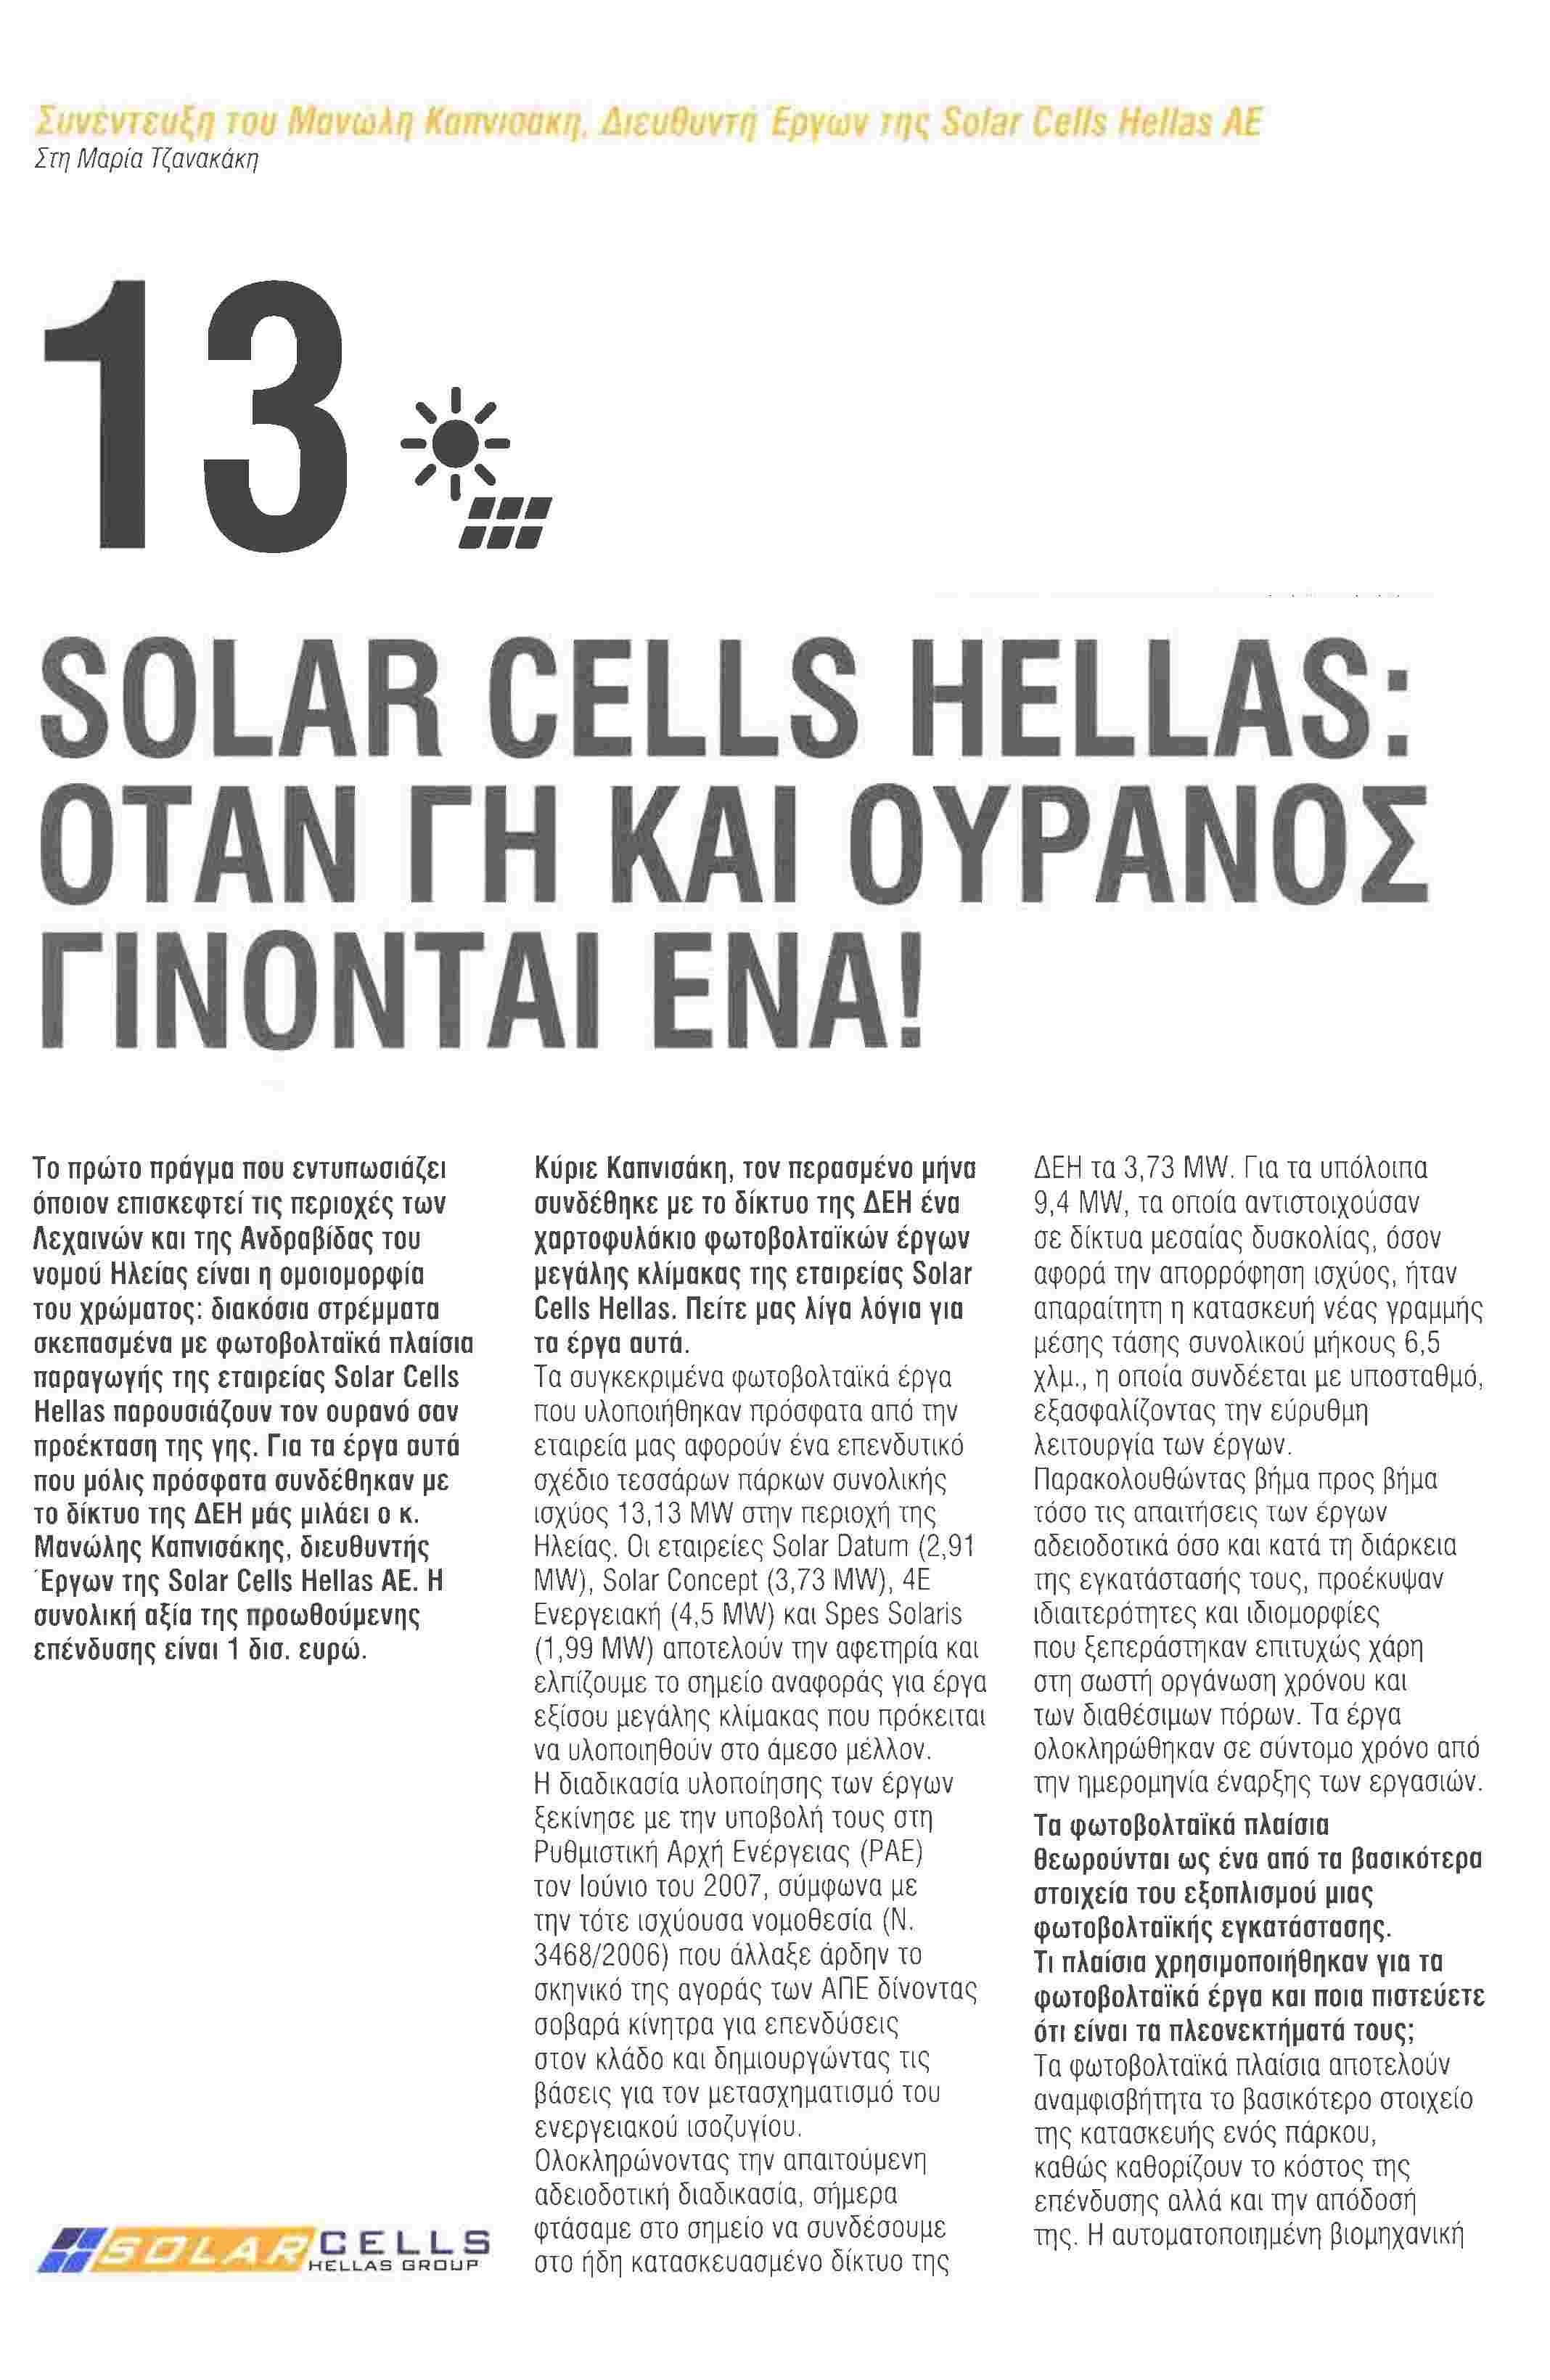 㧟 㧟 㧟 㧟 㧟 㧟 㧟 㧟 㧟 㧟 㧟 㧟 㧟 㧟 㧟 㧟 㧟 㧟 㧟 㧟 㧟 㧟 㧟 㧟 㧟 㧟 㧟 㧟 Συνέντευξη του Μανωλη Καπνισακη, ιευθυντή Εργων π/ς Solar Cells Hellas AE Στη Μαρία Τζανακάκη SOLAR CELLS HELLAS: ΟΤΑΝ ΓΗ ΚΑΙ ΟΥΡΑΝΟΣ ΓΙΝΟΝΤΑΙ